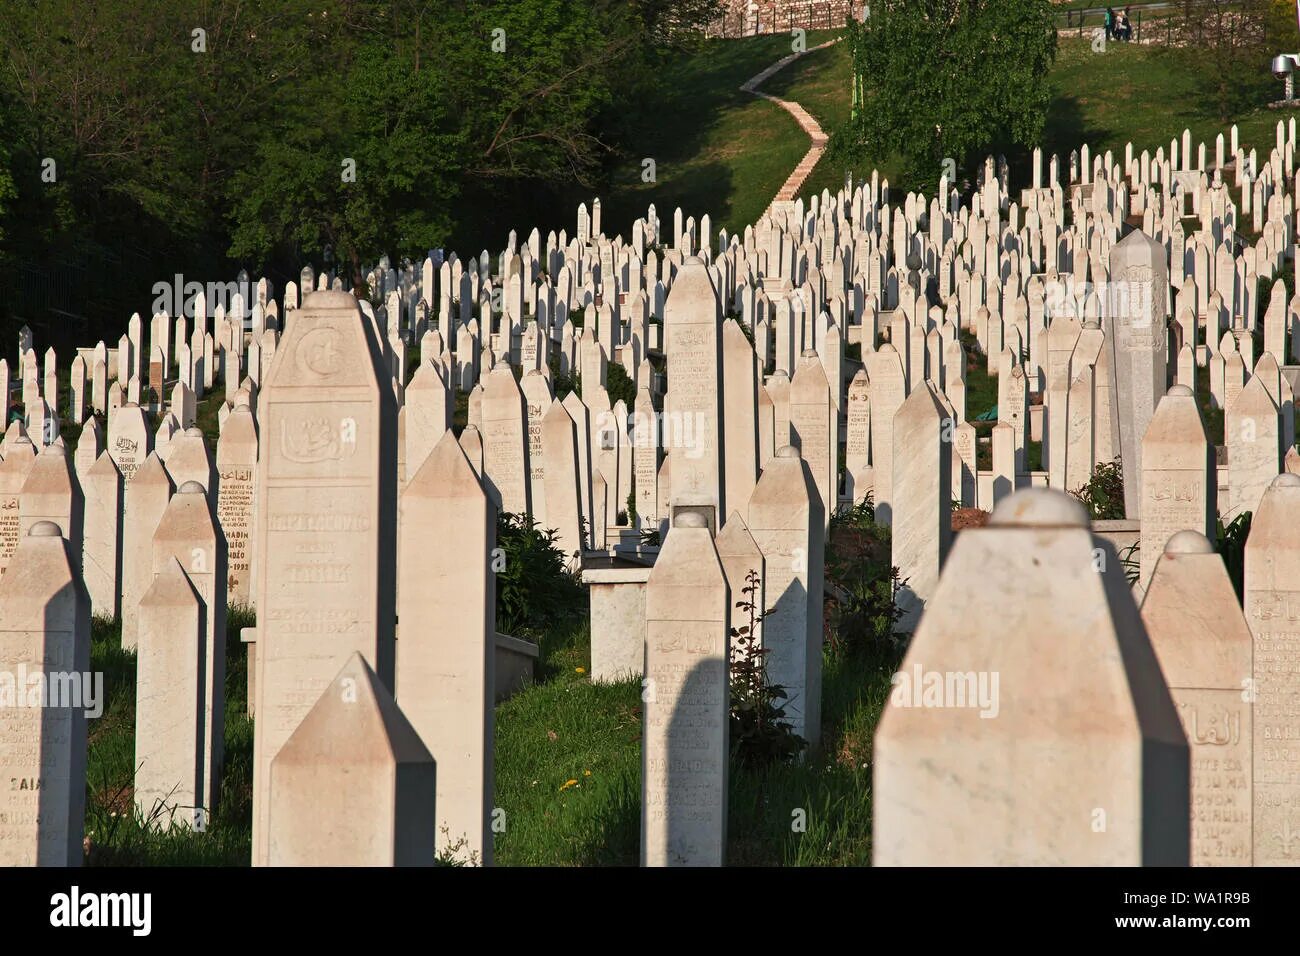 Можно ли посещать кладбище в исламе. Сараево Босния и Герцеговина кладбище. Мусульманское кладбище. Арабское кладбище. Могилы на мусульманском кладбище.